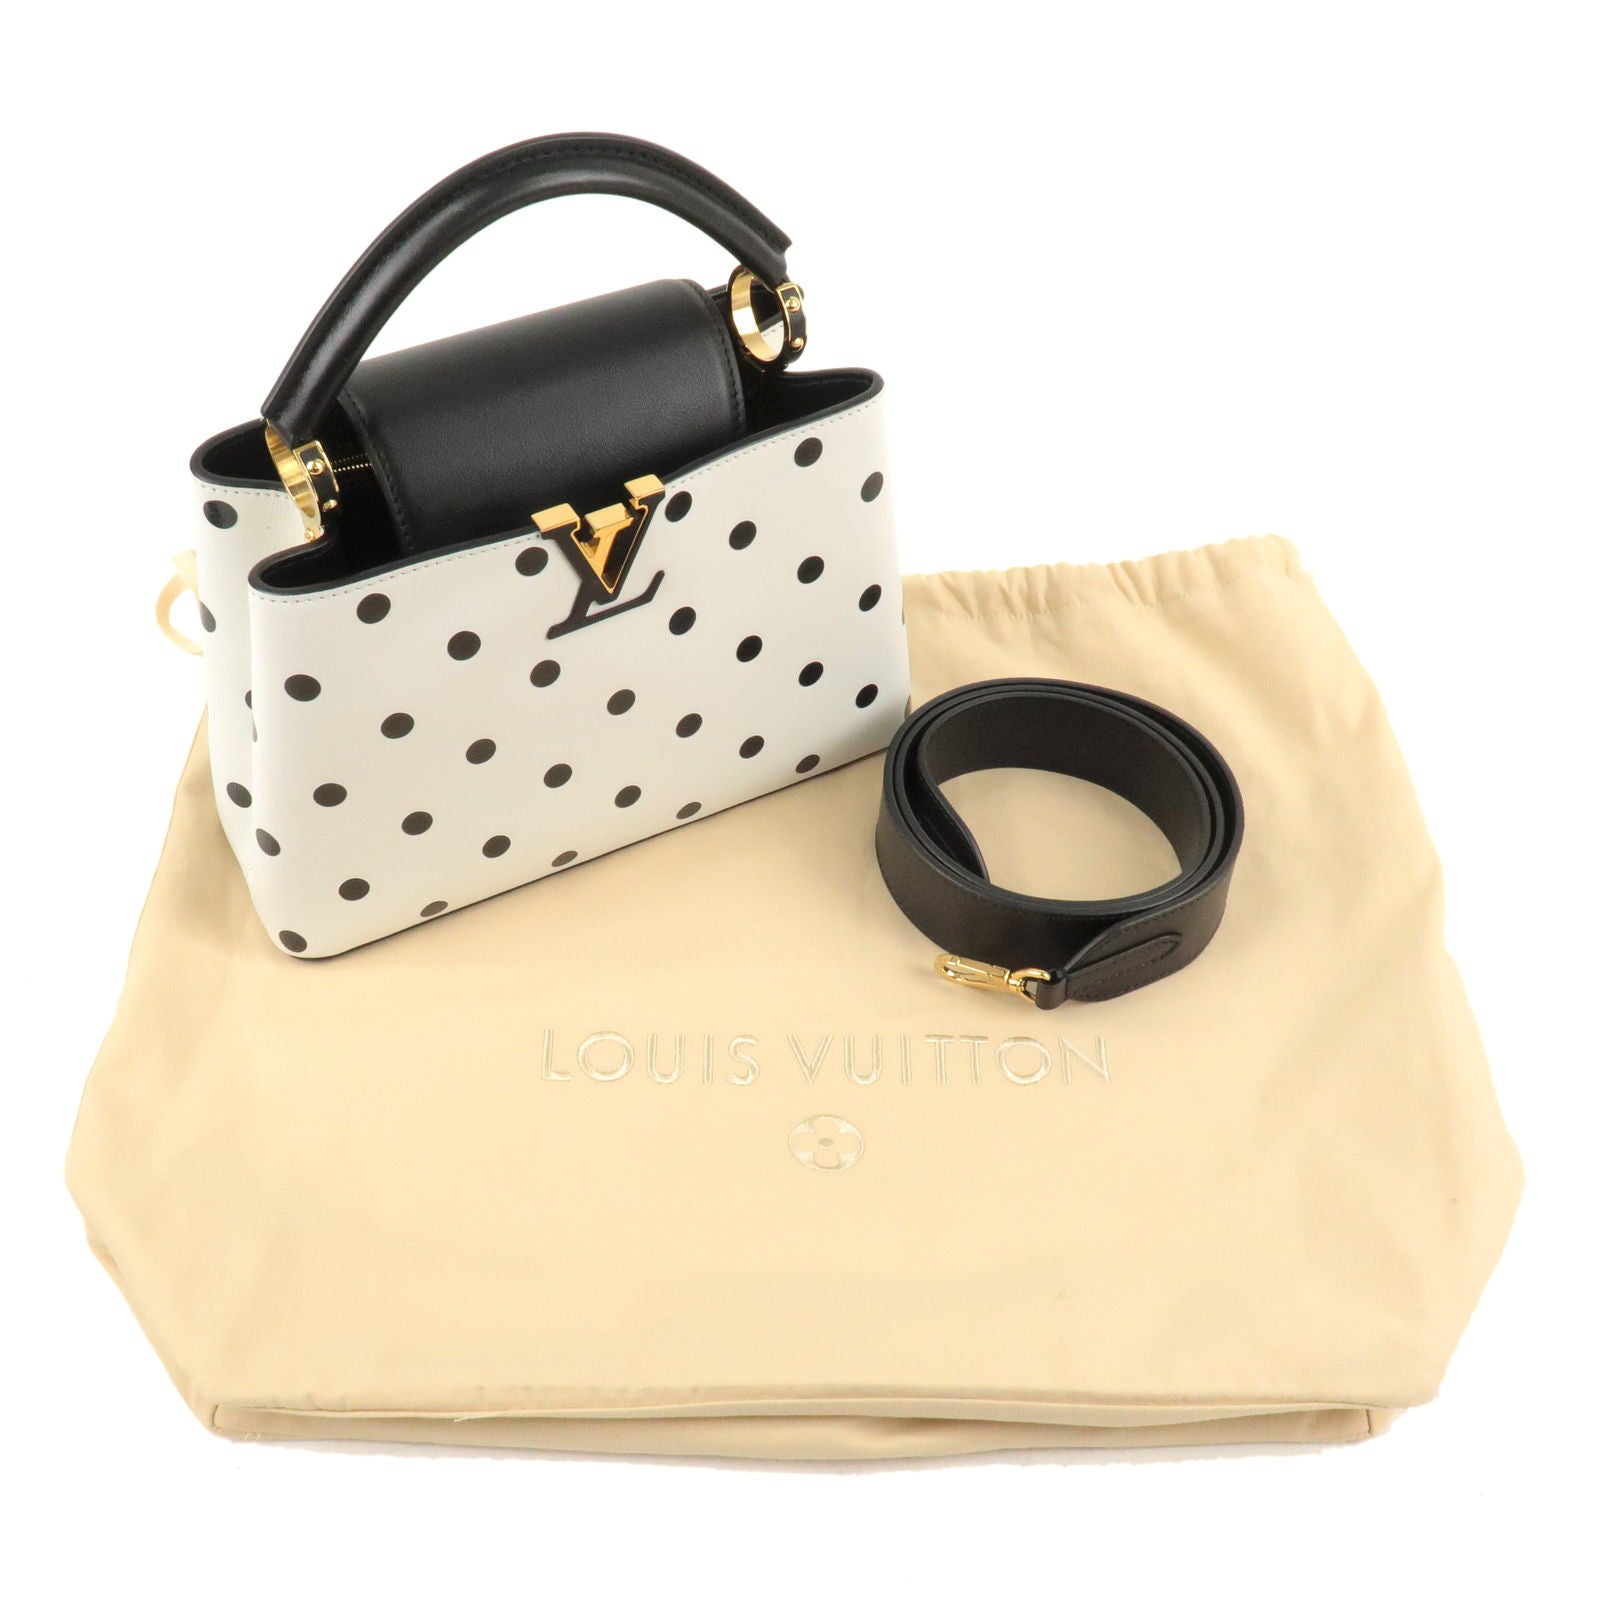 Louis+Vuitton+Capucines+Shoulder+Bag+Black+Leather for sale online